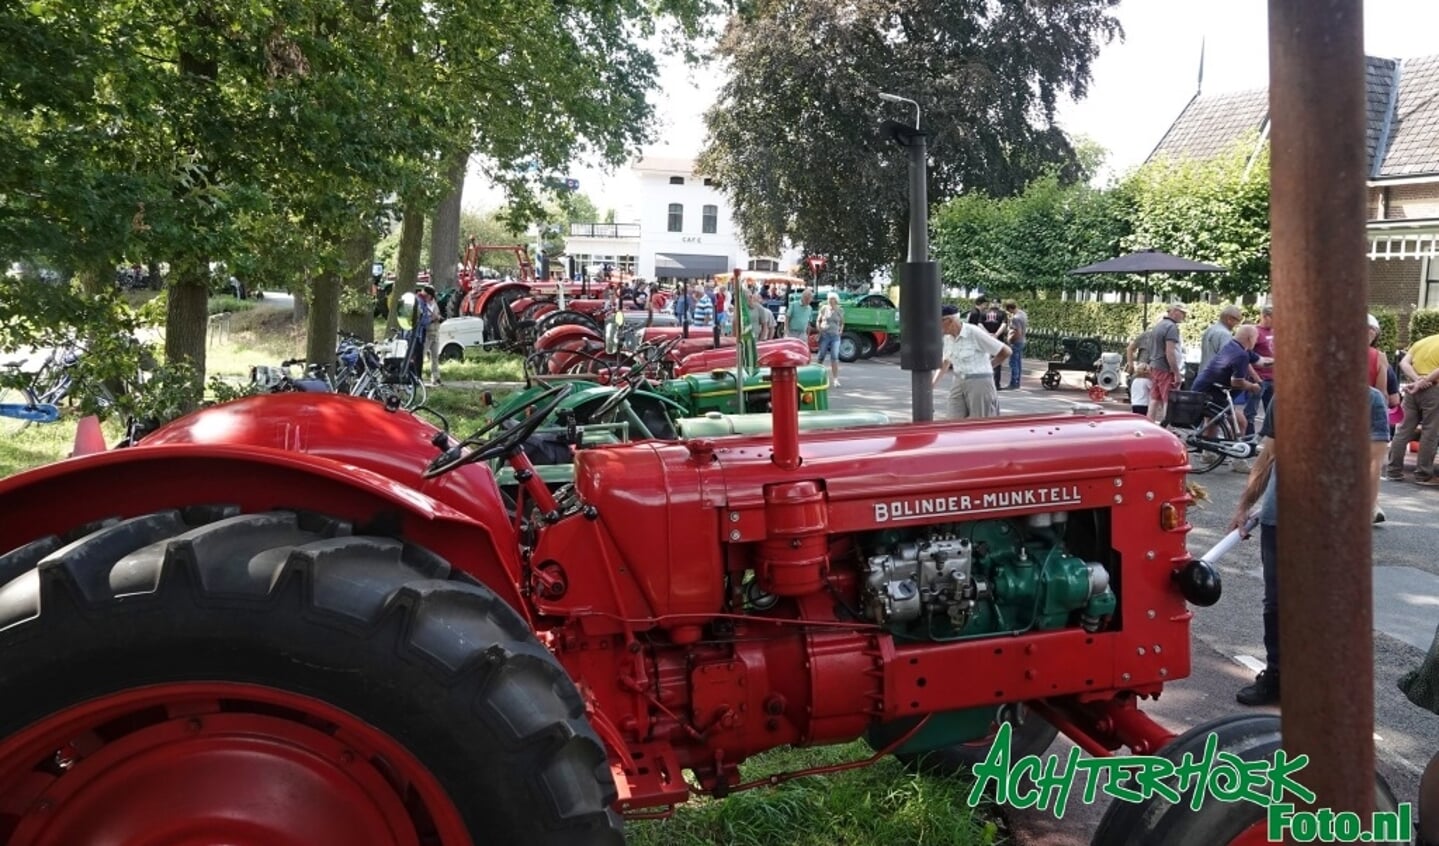 Tientallen oude tractoren en landbouwwerktuigen zijn tijdens de oldtimershow te bewonderen. Foto: Archief Achterhoekfoto/Gradus Derksen.